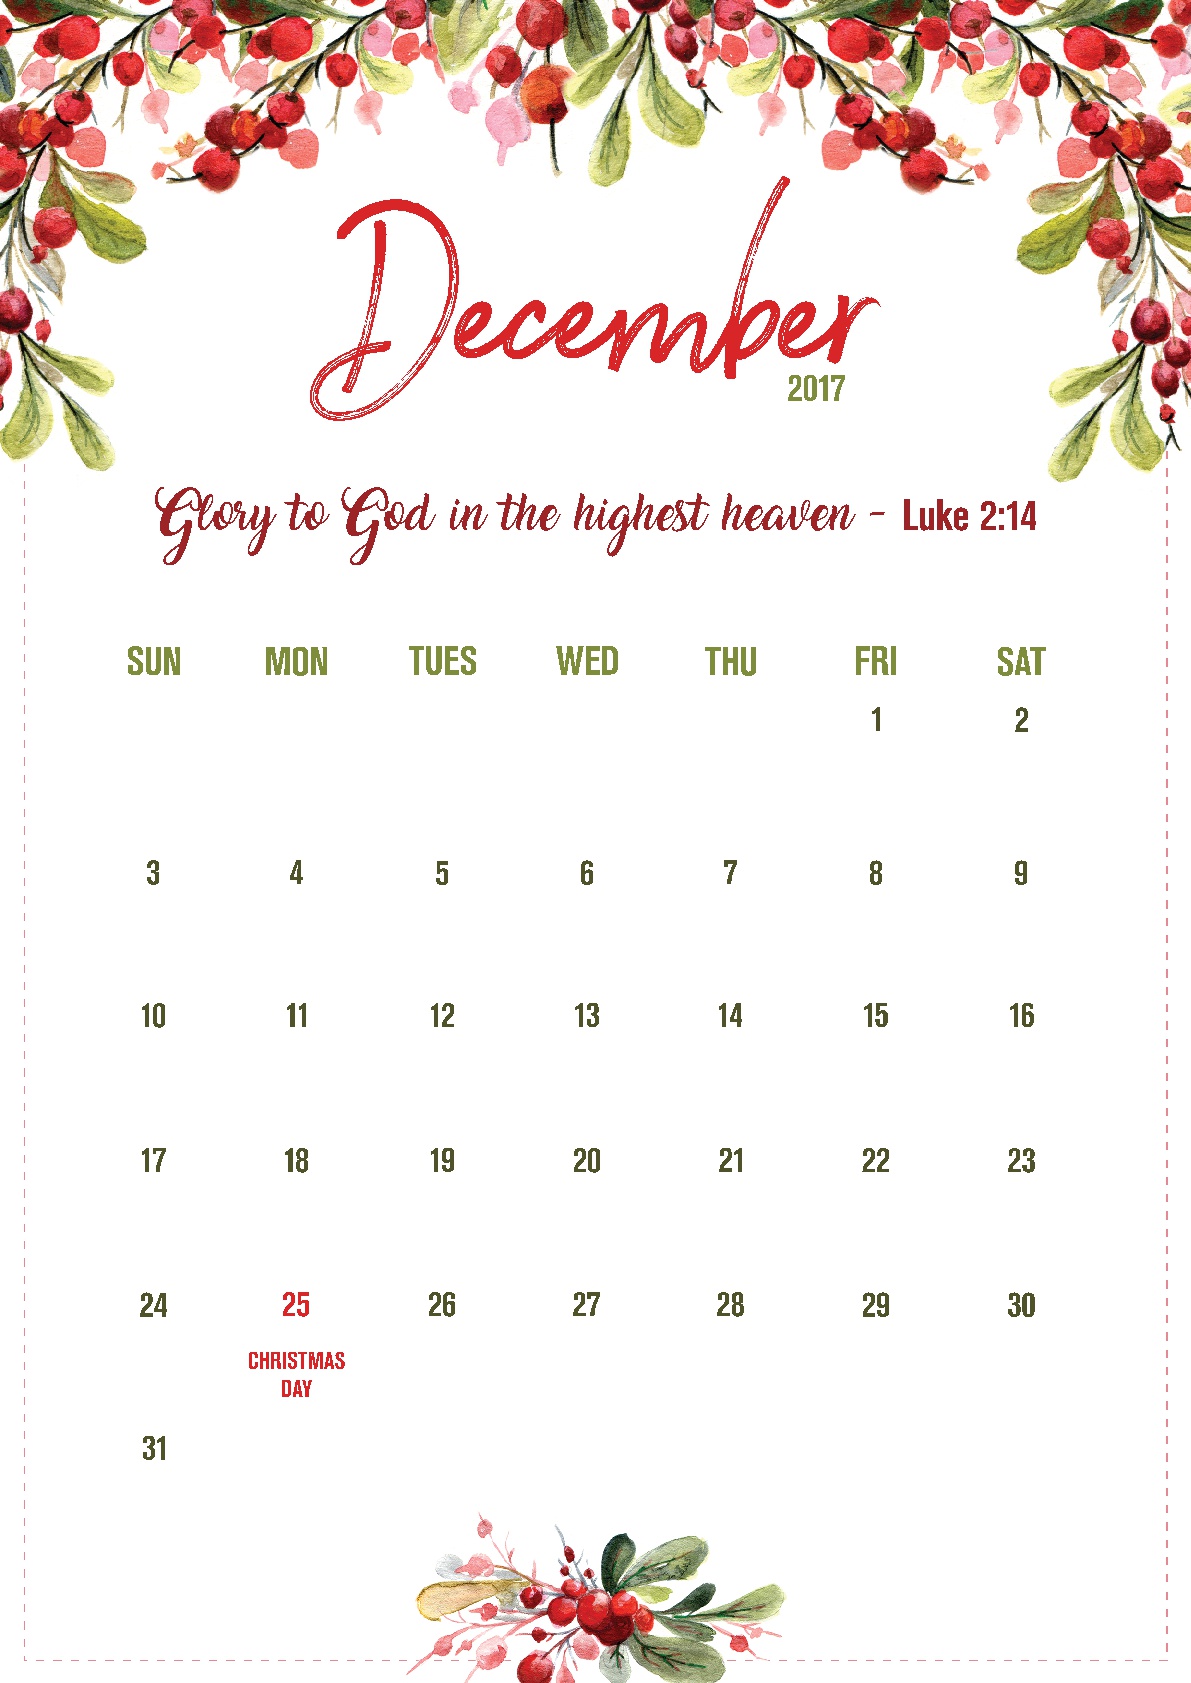 December Calendar Printable Christianbook com Blog